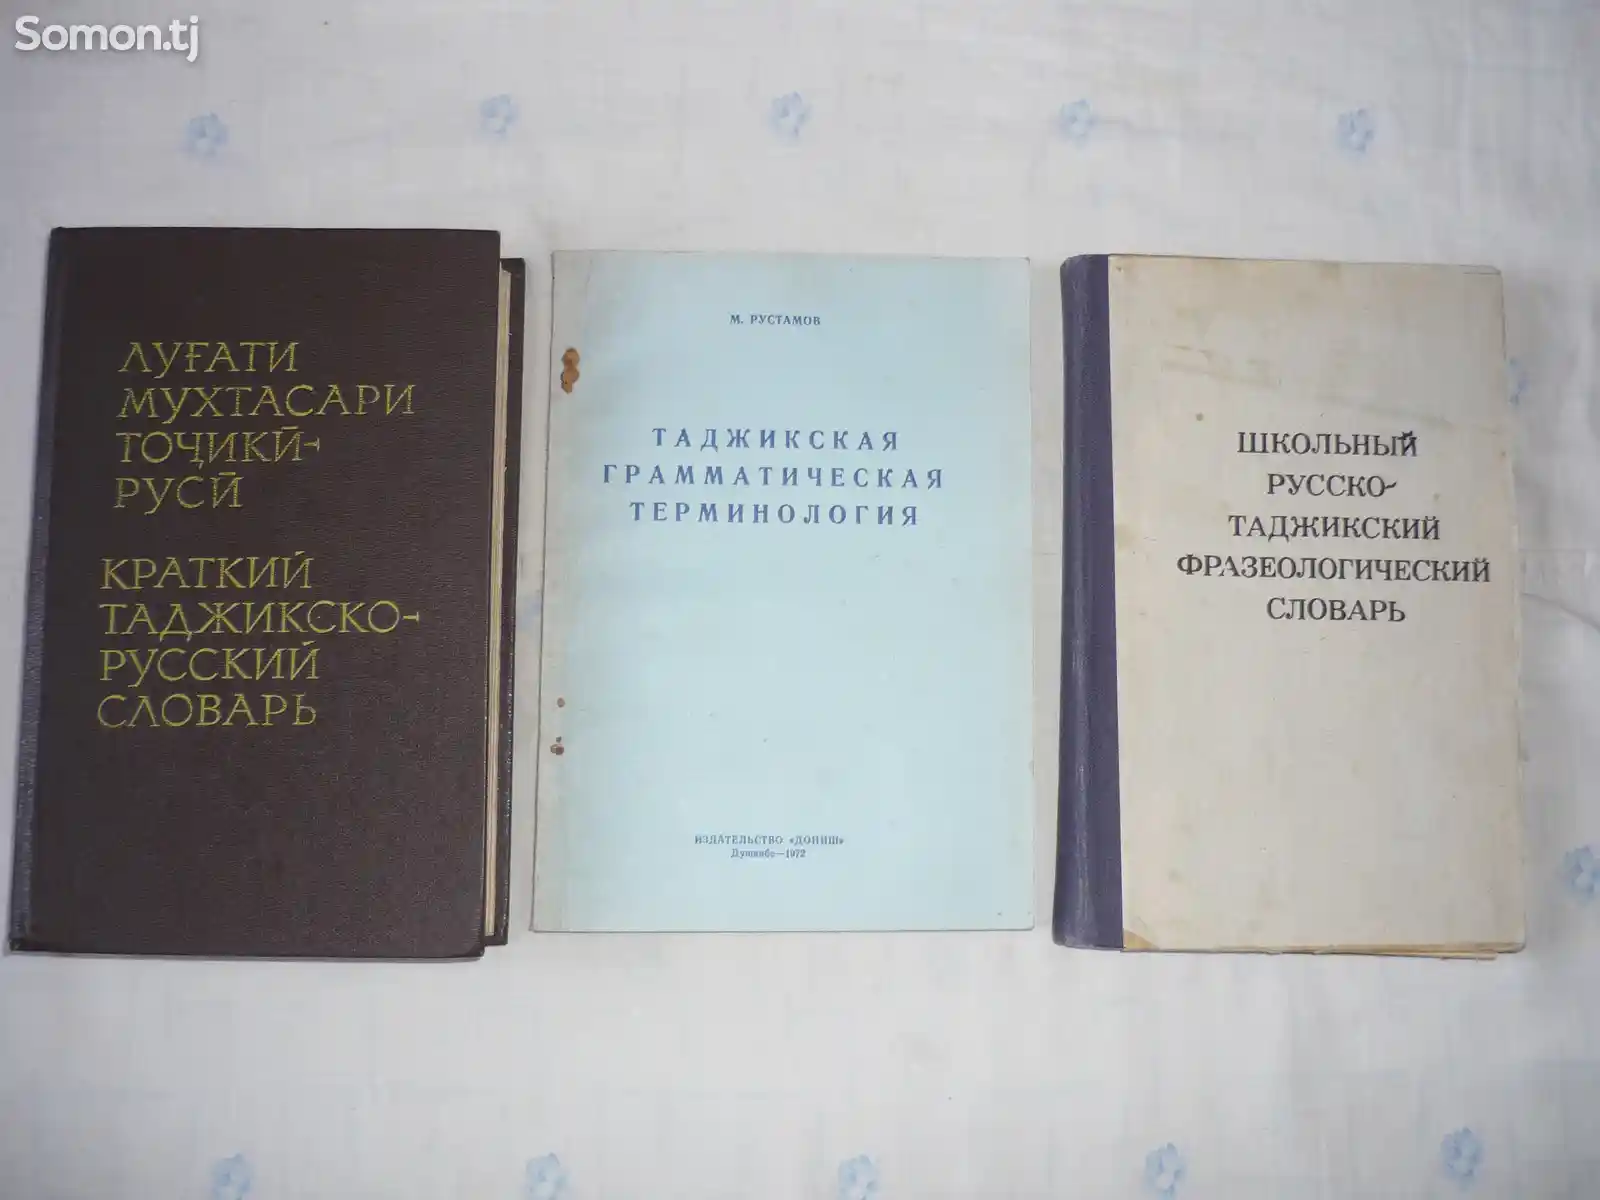 Сборник таджикских словарей